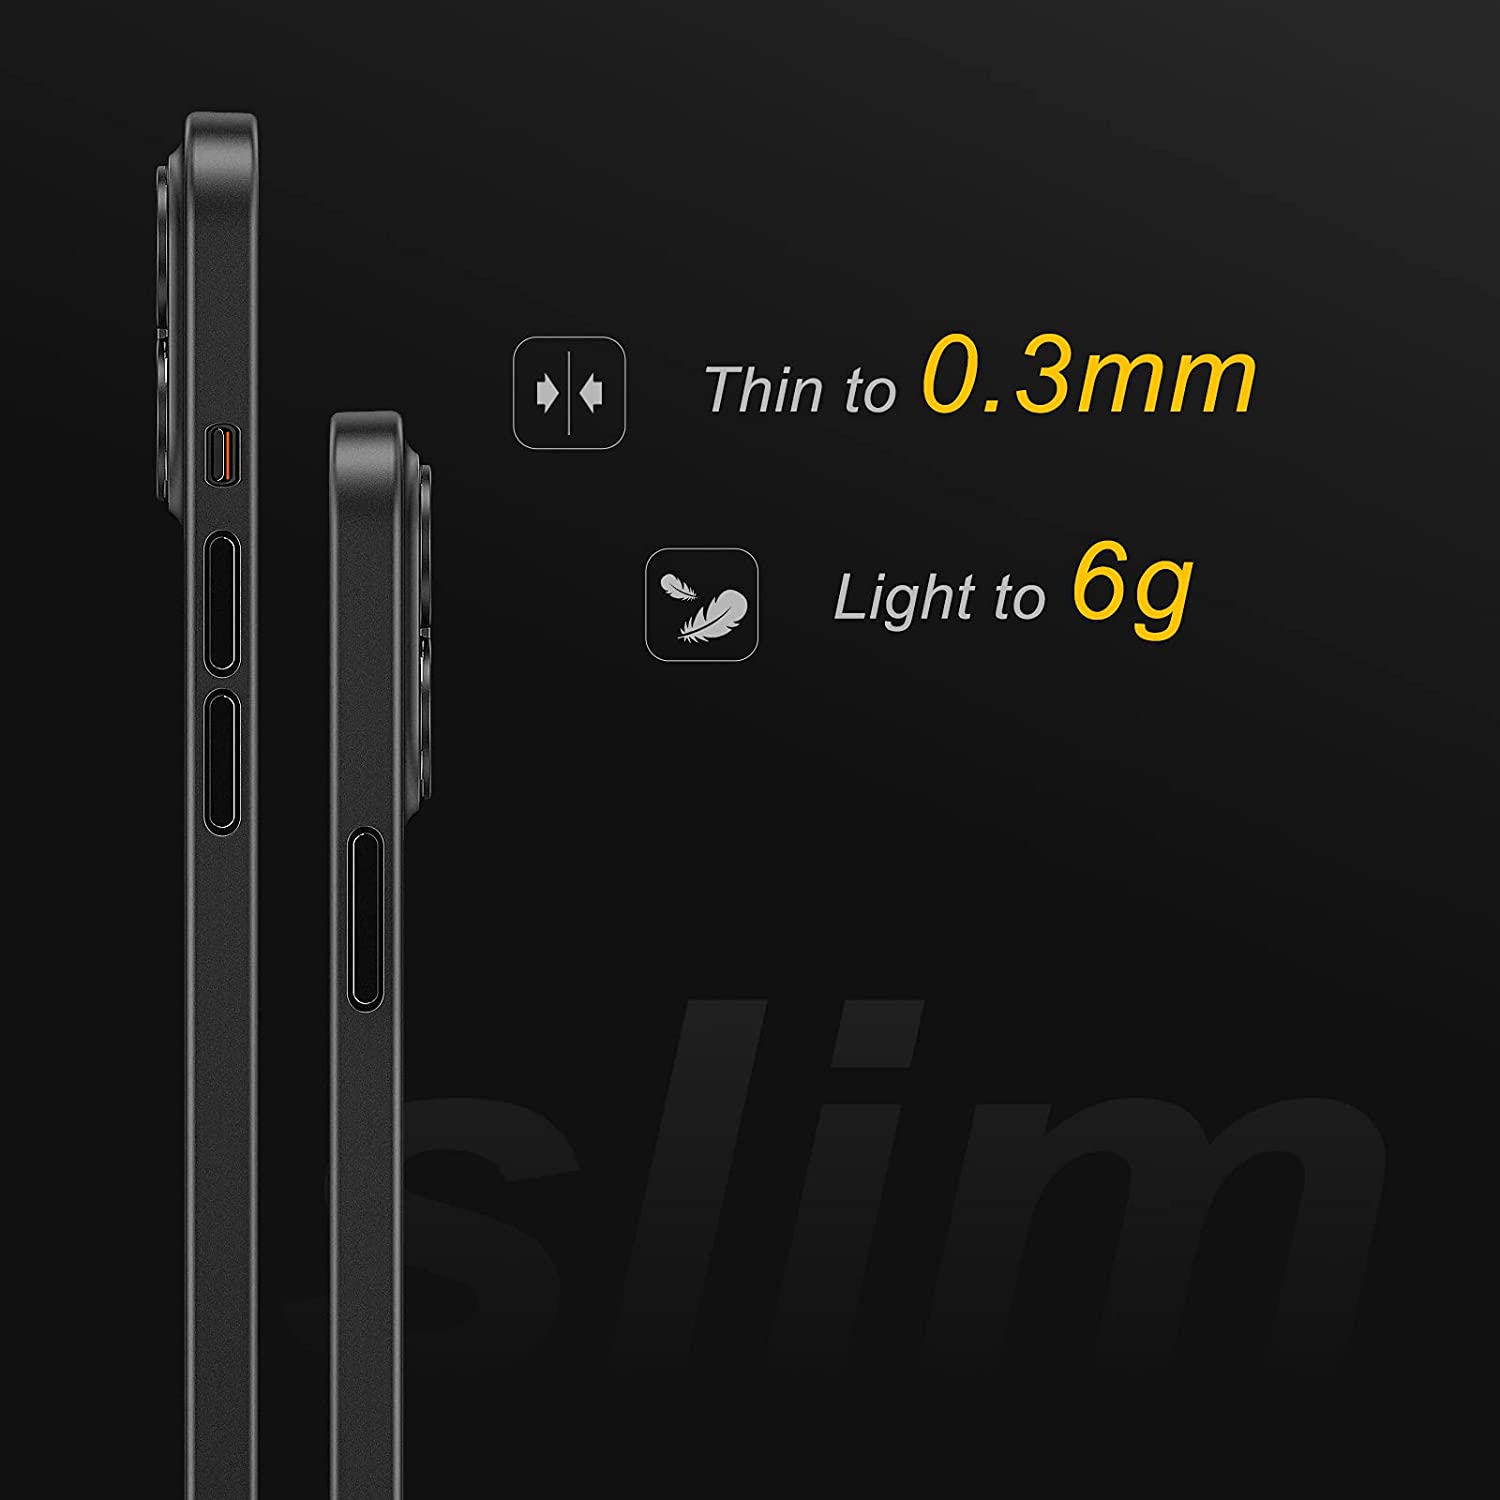 Ốp lưng chống sốc siêu mỏng 0.3mm cho iPhone 13 Pro hiệu Memumi mặt lưng nhám mềm mịn - hàng nhập khẩu